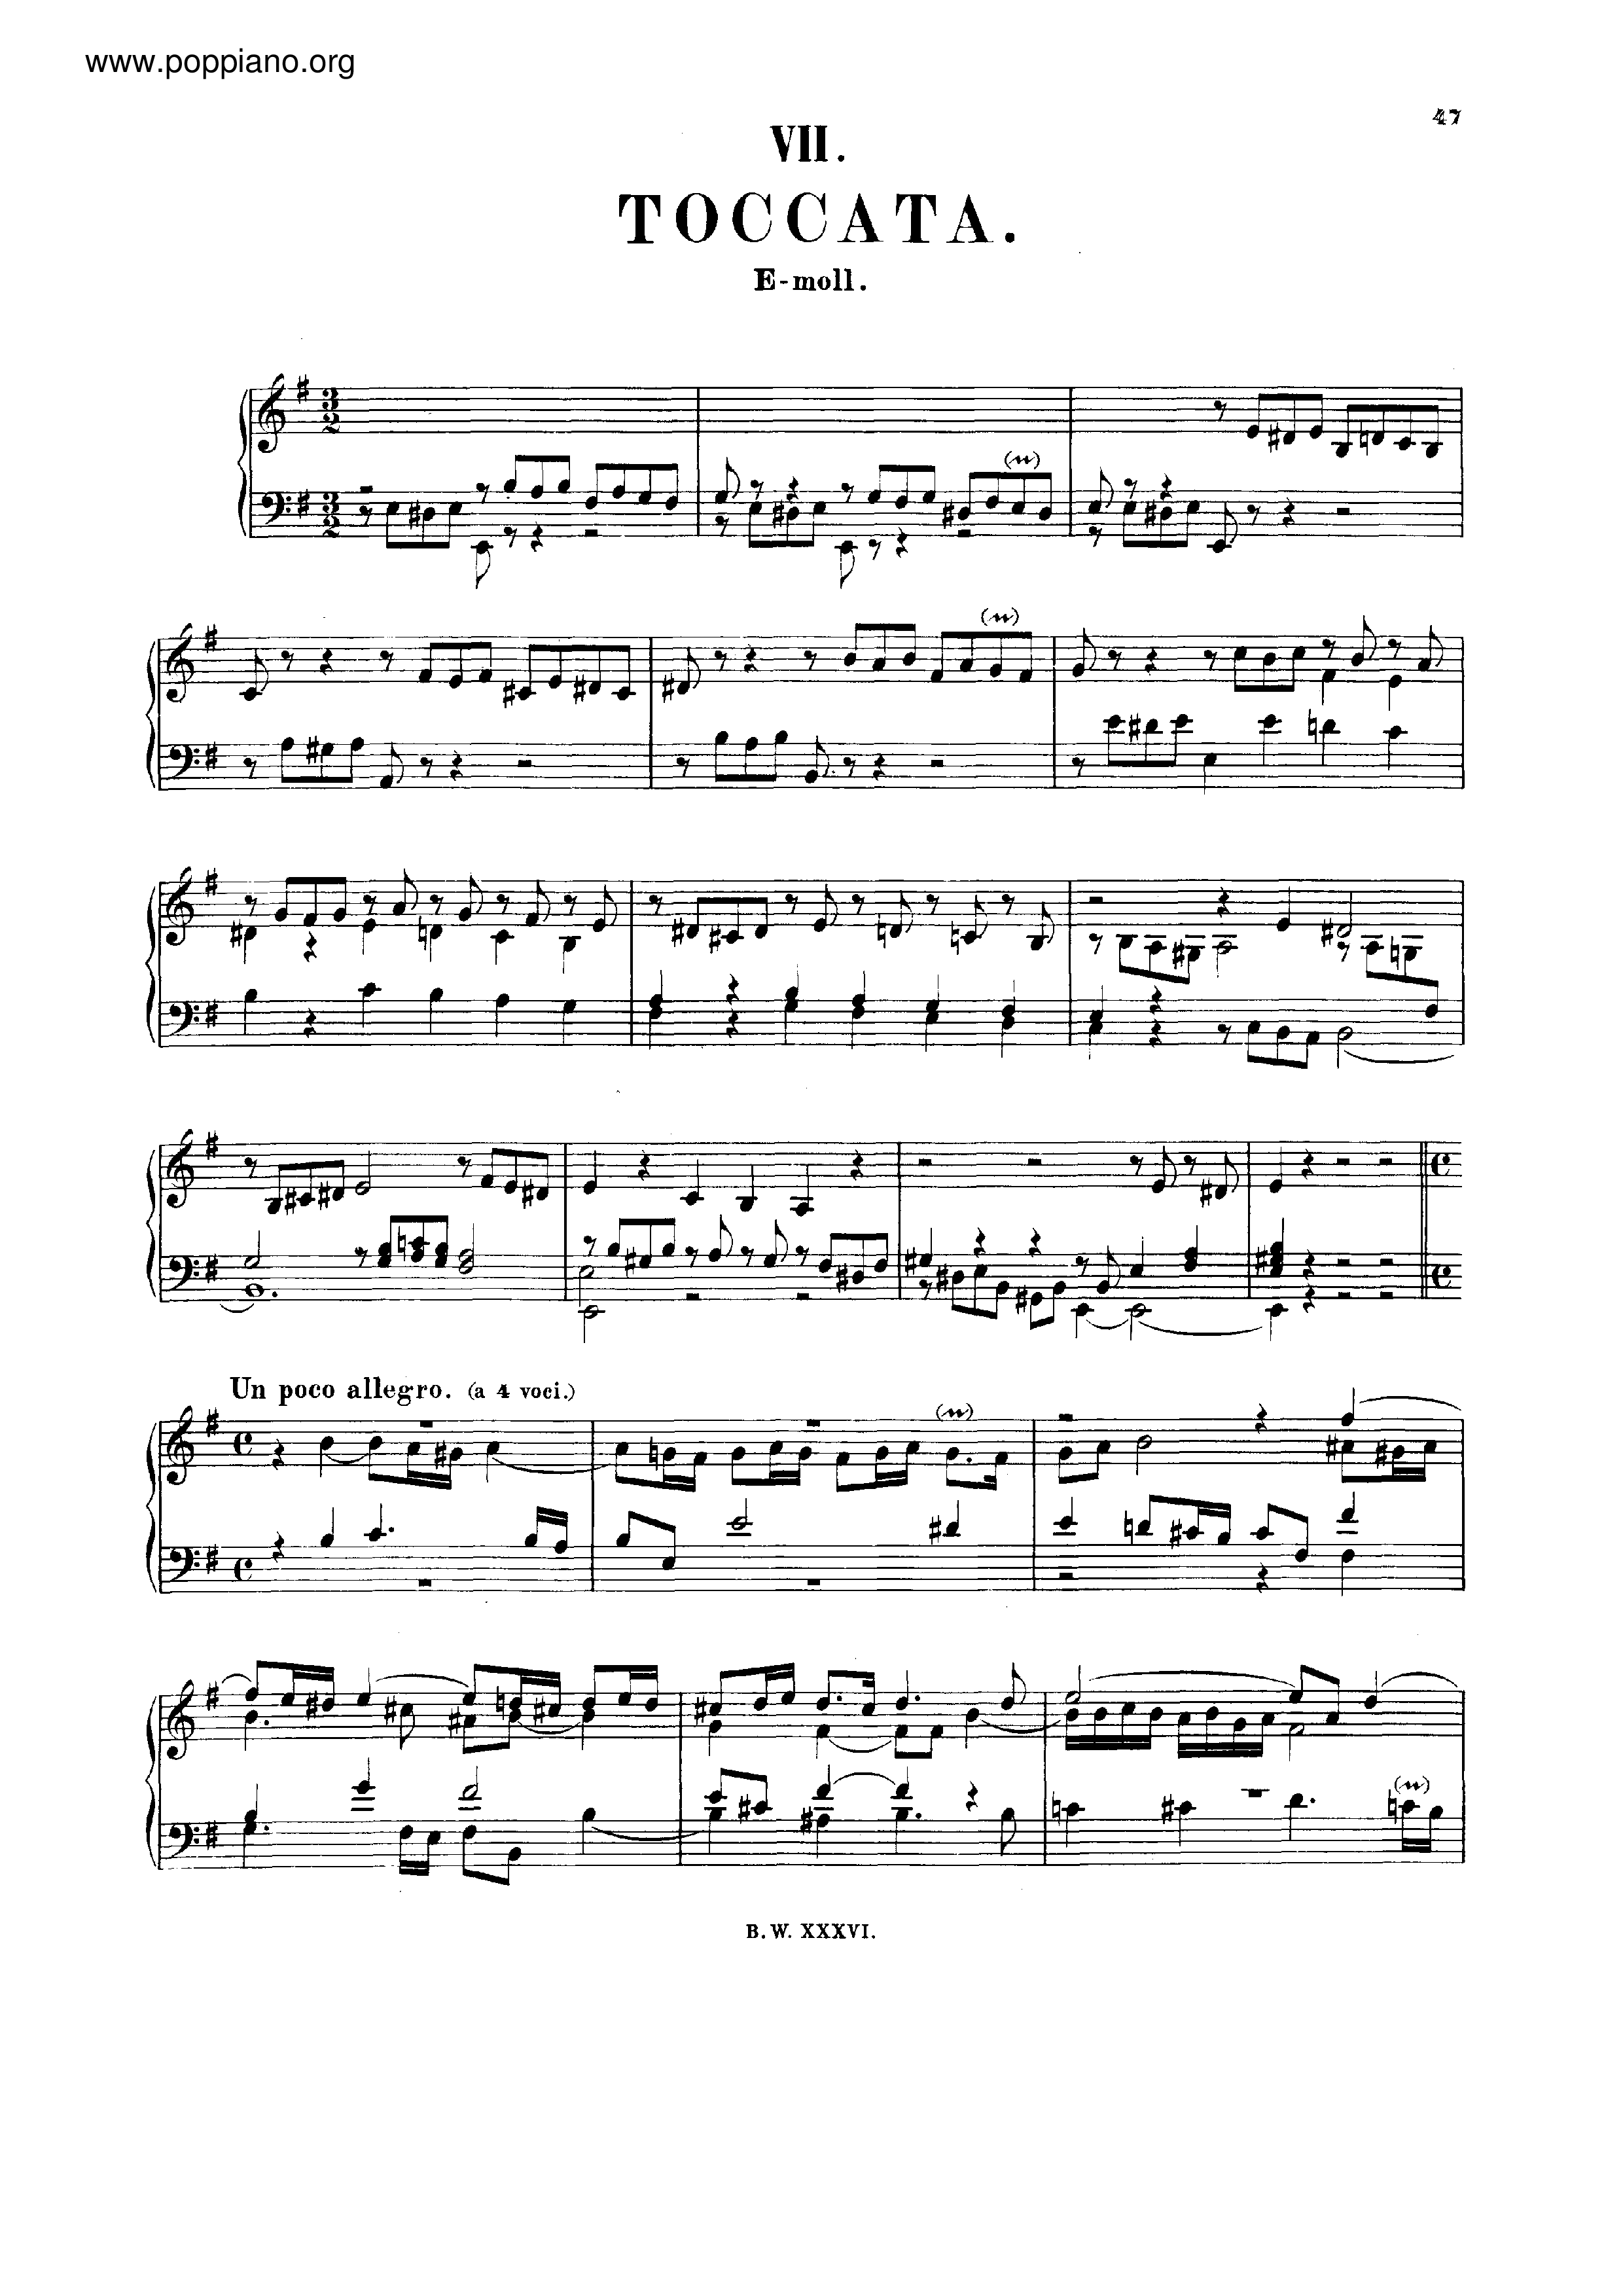 Toccata in E minor, BWV 914 Score